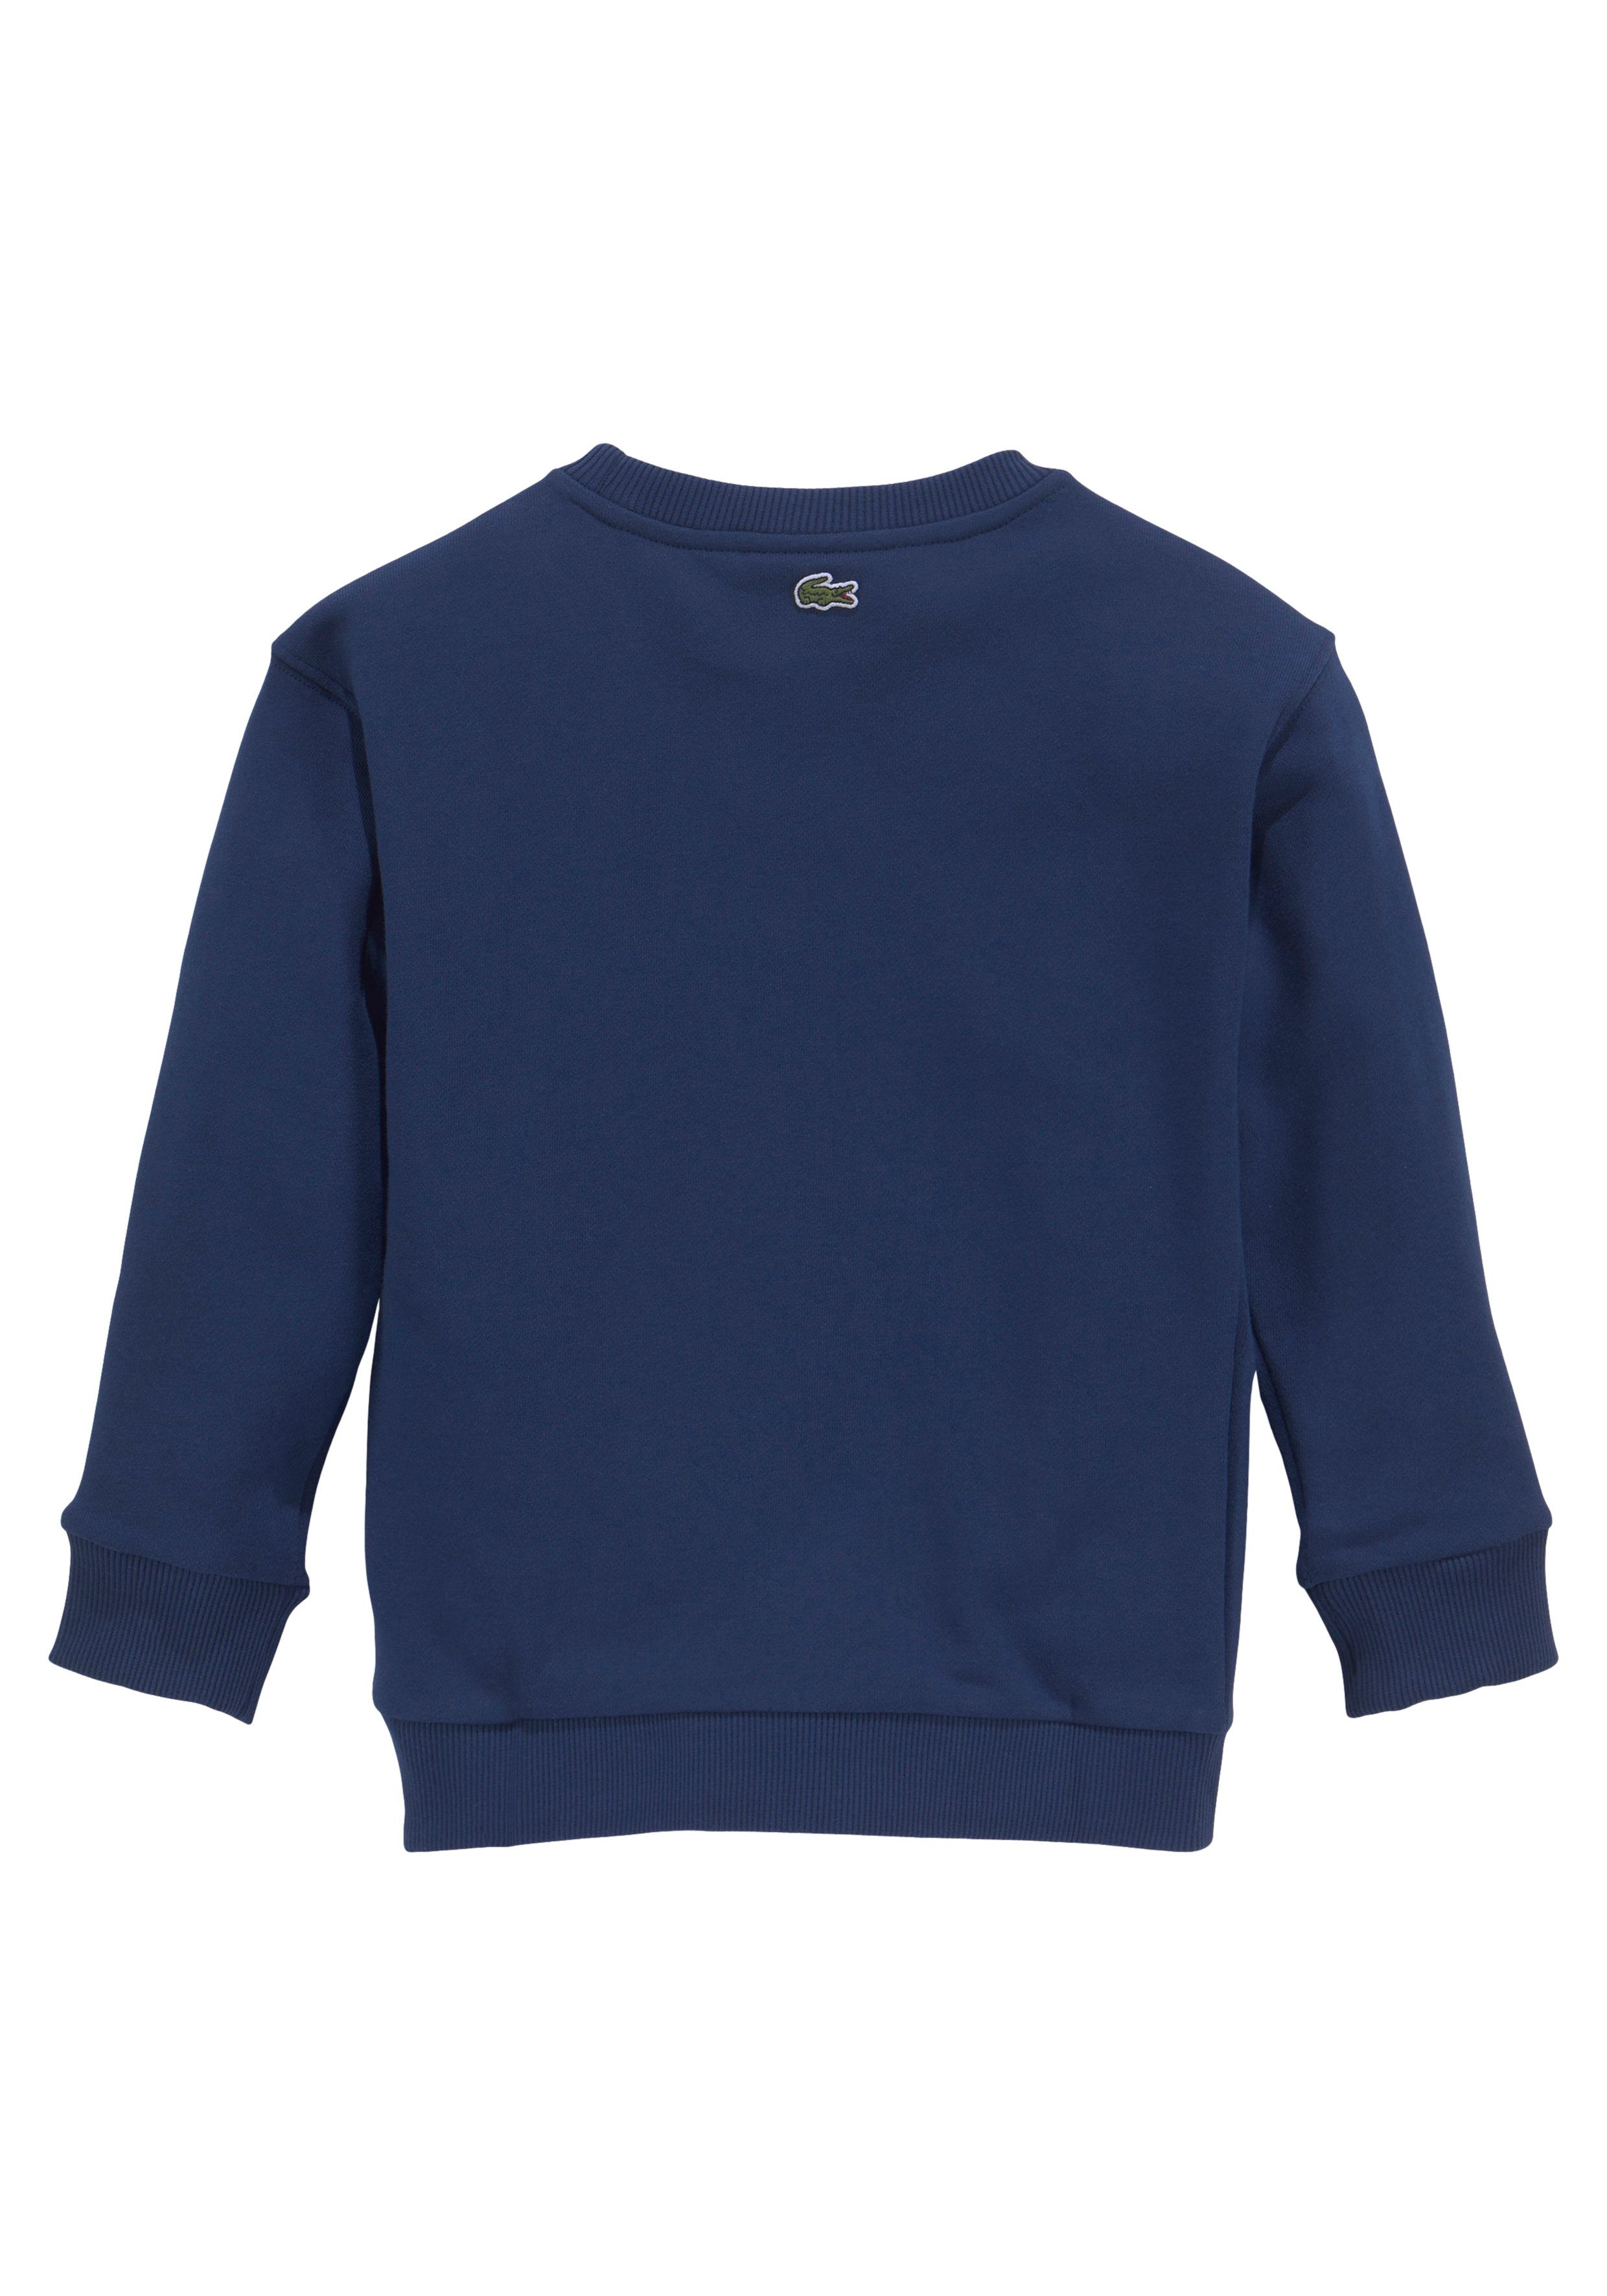 Lacoste Sweatshirt Kinder Kids Brust Junior modernem auf der MiniMe,mit blau Labeldruck